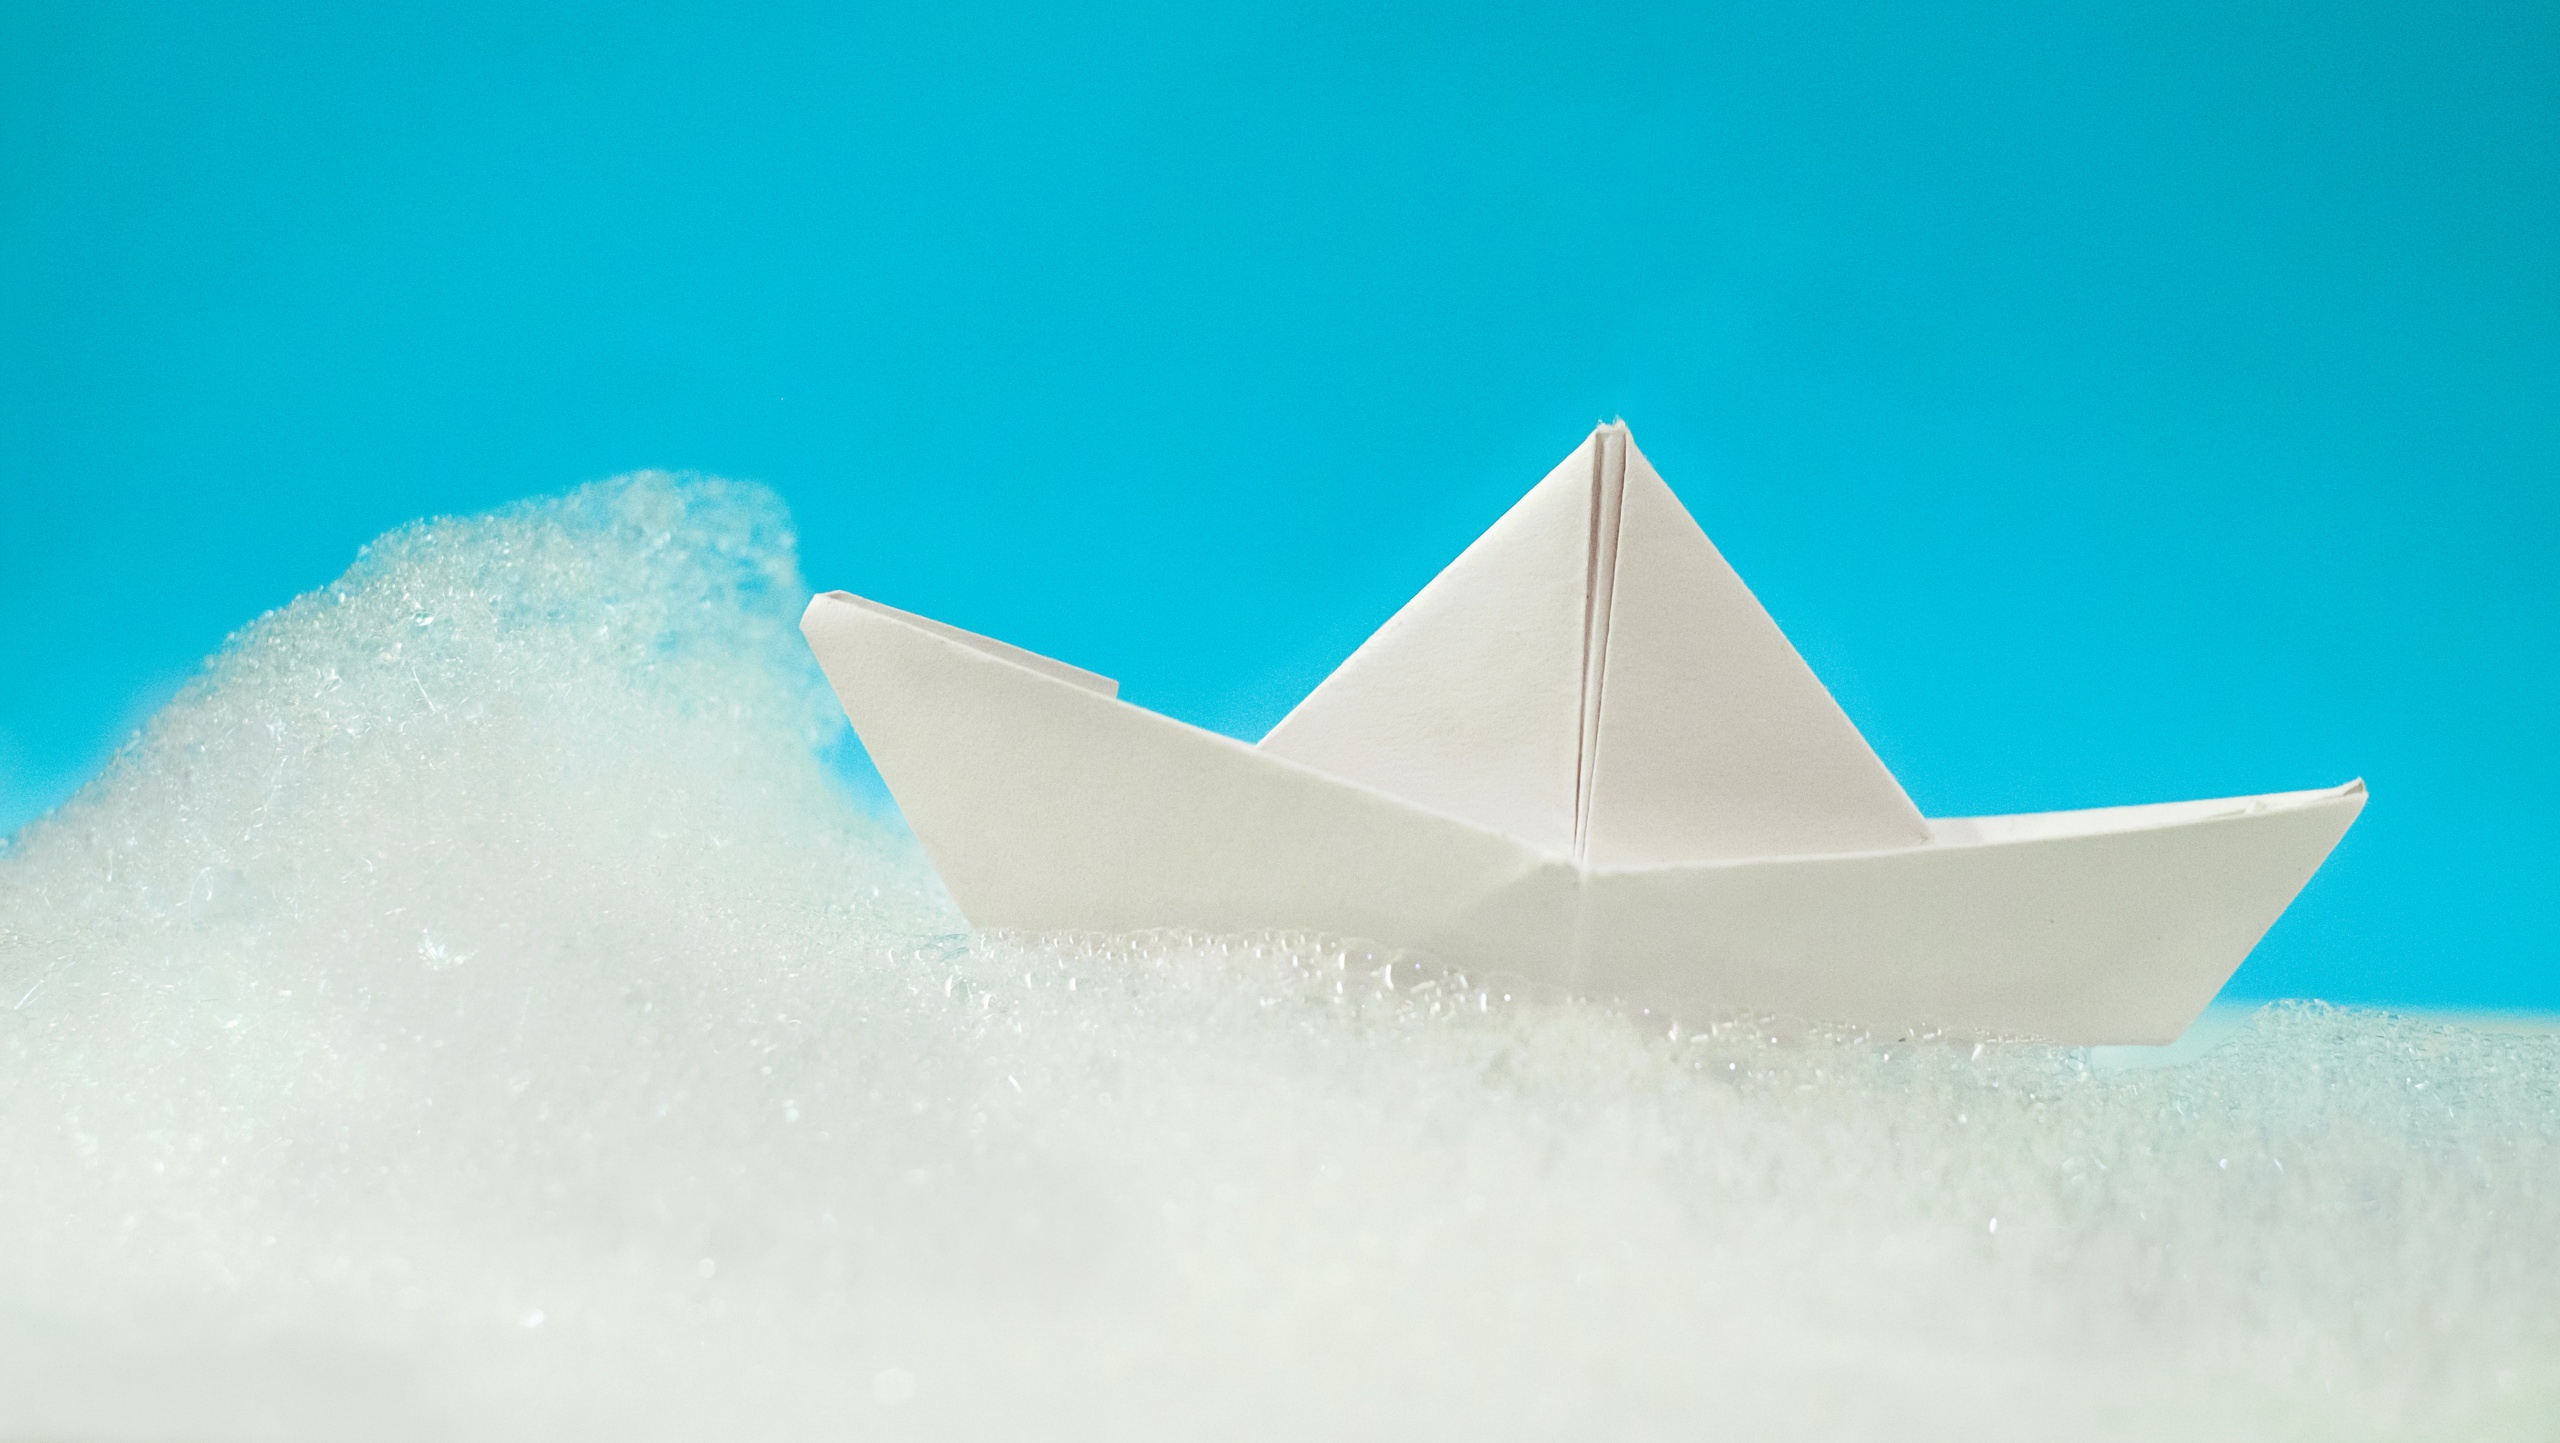 Слушать бумажные кораблики. Бумажный кораблик. Фон бумажный кораблик. Бумажный кораблик картинка. Оригами кораблик.